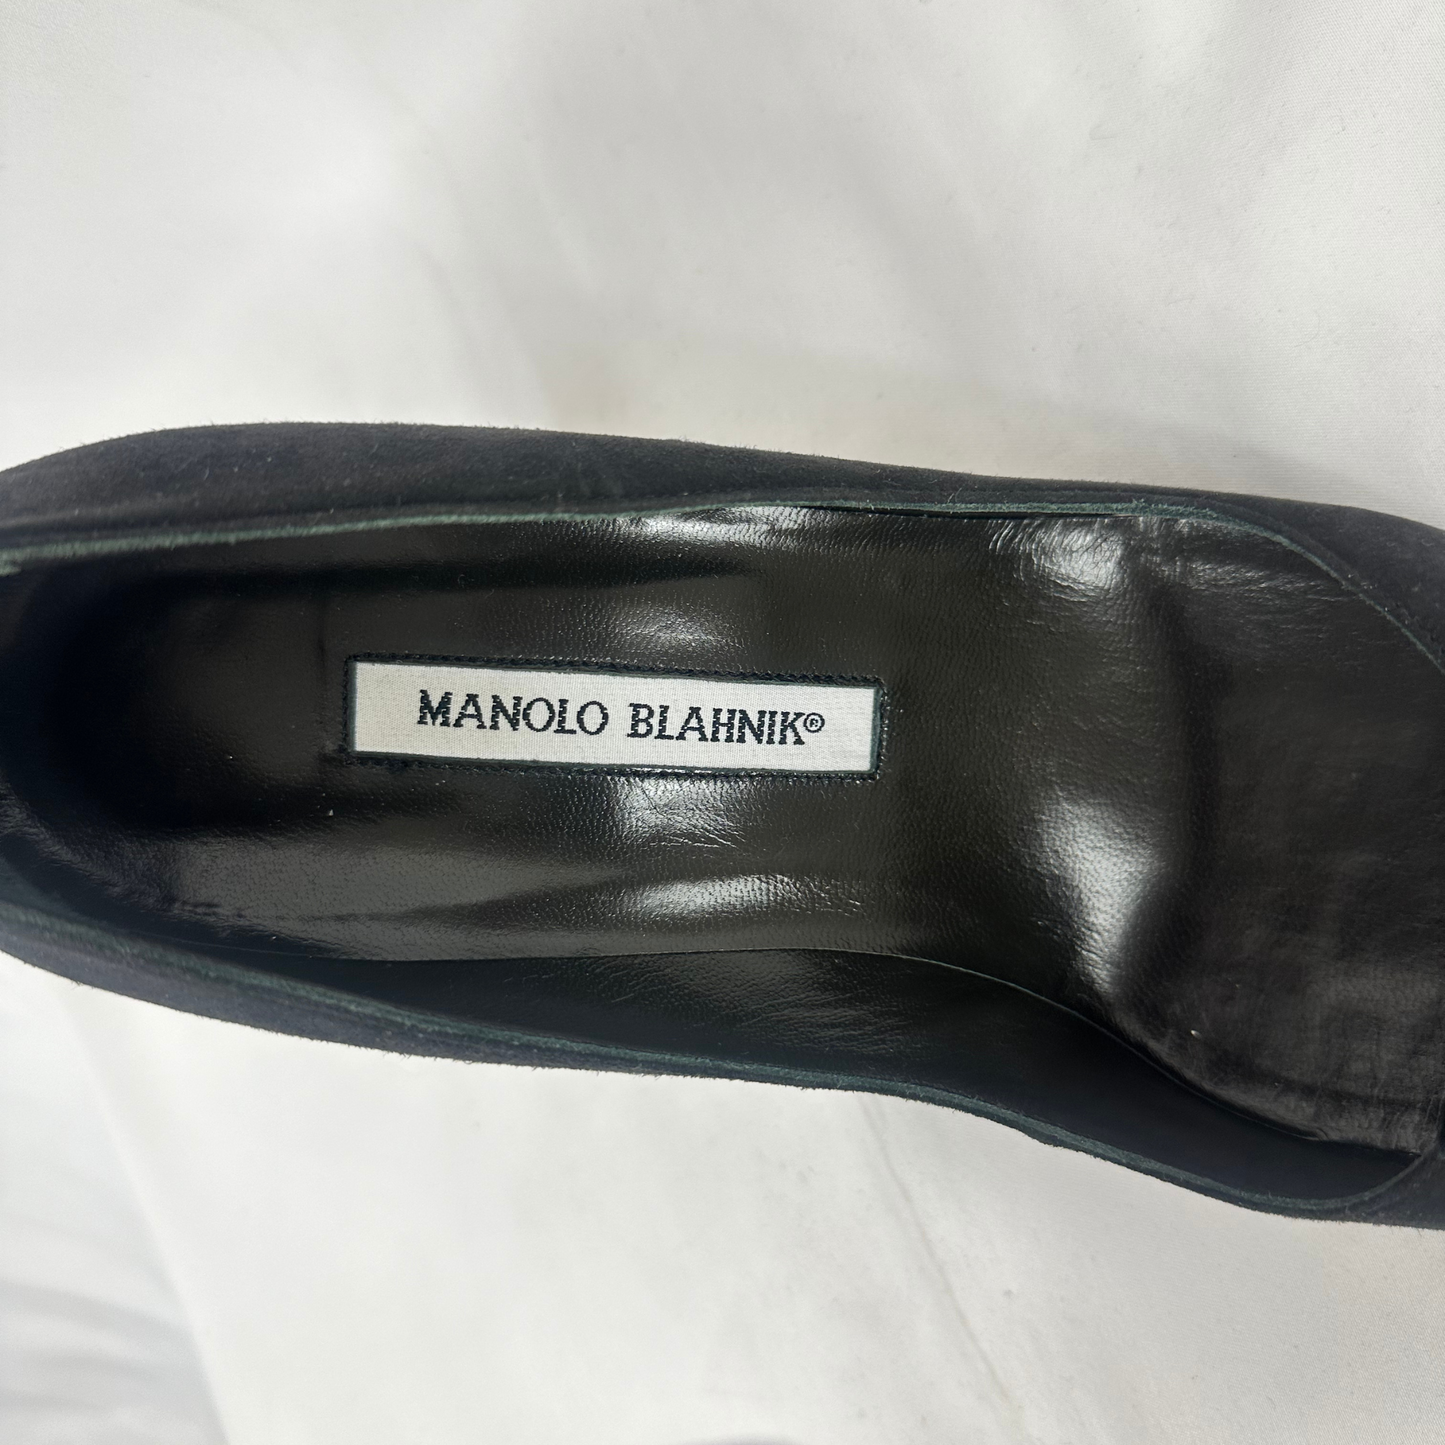 MANOLO BLAHNIK Pointed Toe Heels